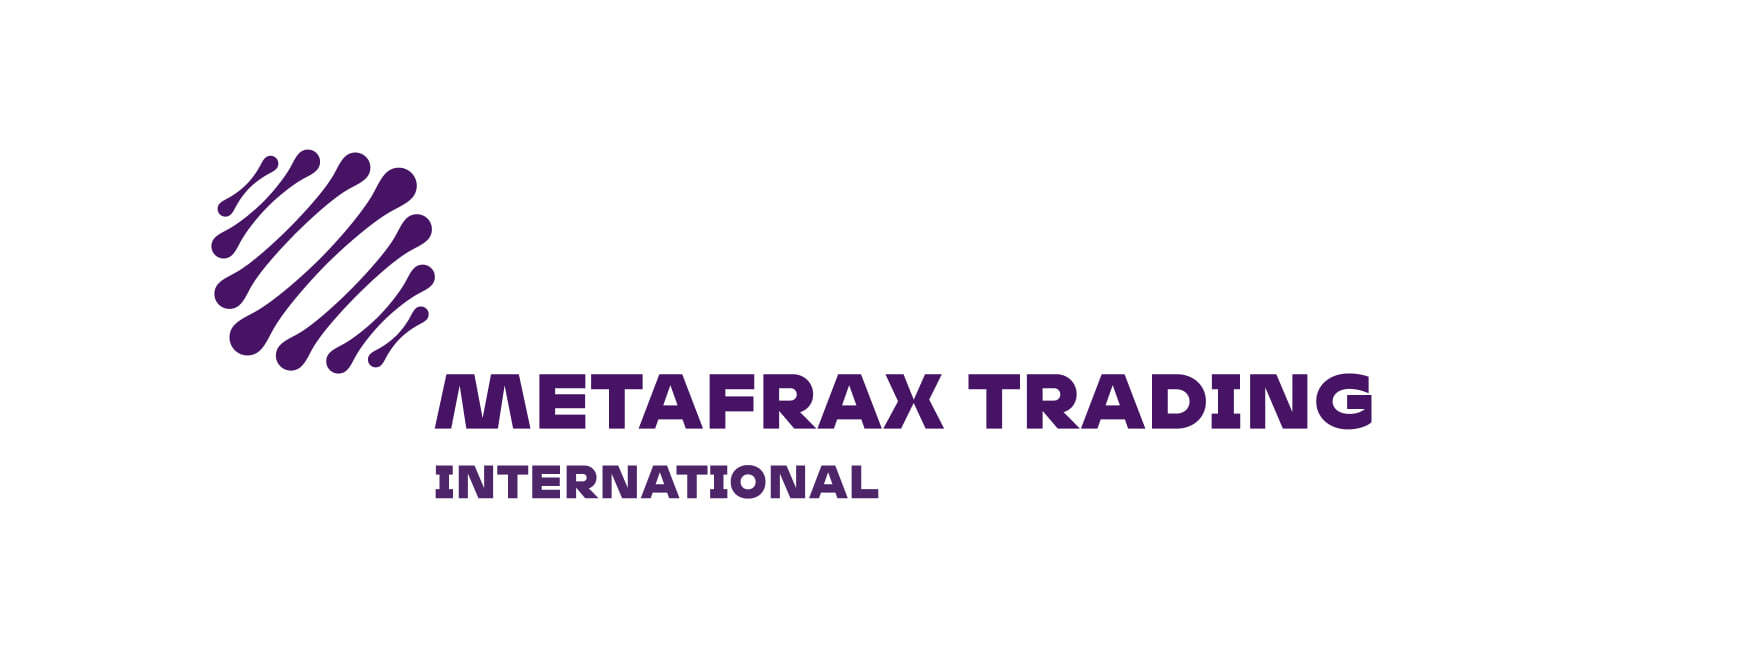 Metafrax Trading International зарегистрировал фискальное представительство в Нидерландах